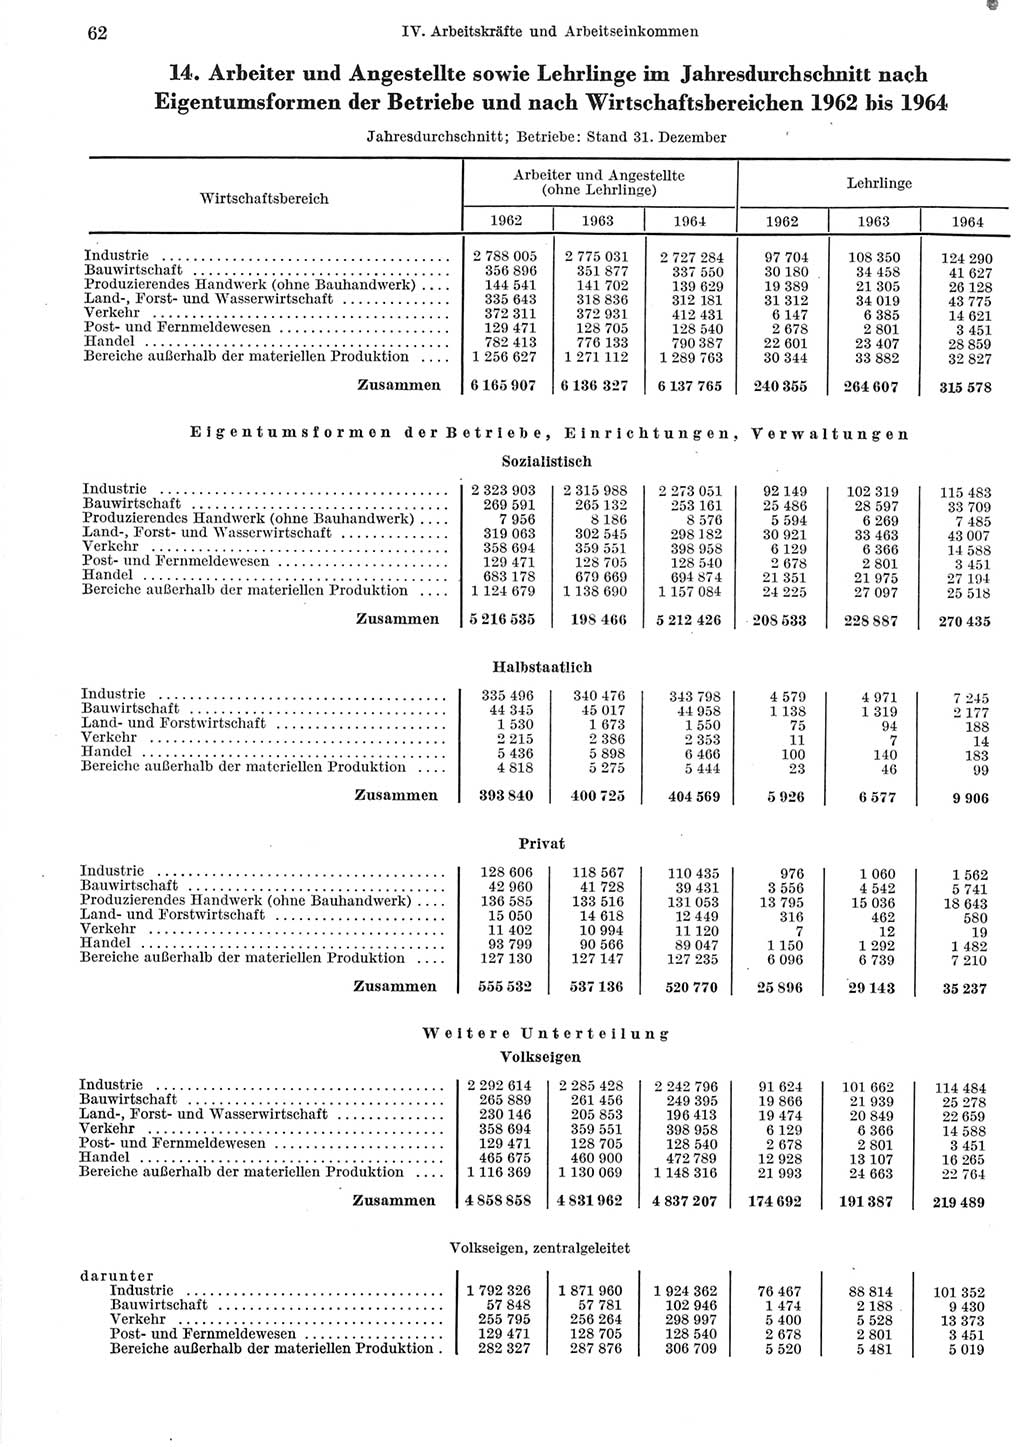 Statistisches Jahrbuch der Deutschen Demokratischen Republik (DDR) 1965, Seite 62 (Stat. Jb. DDR 1965, S. 62)